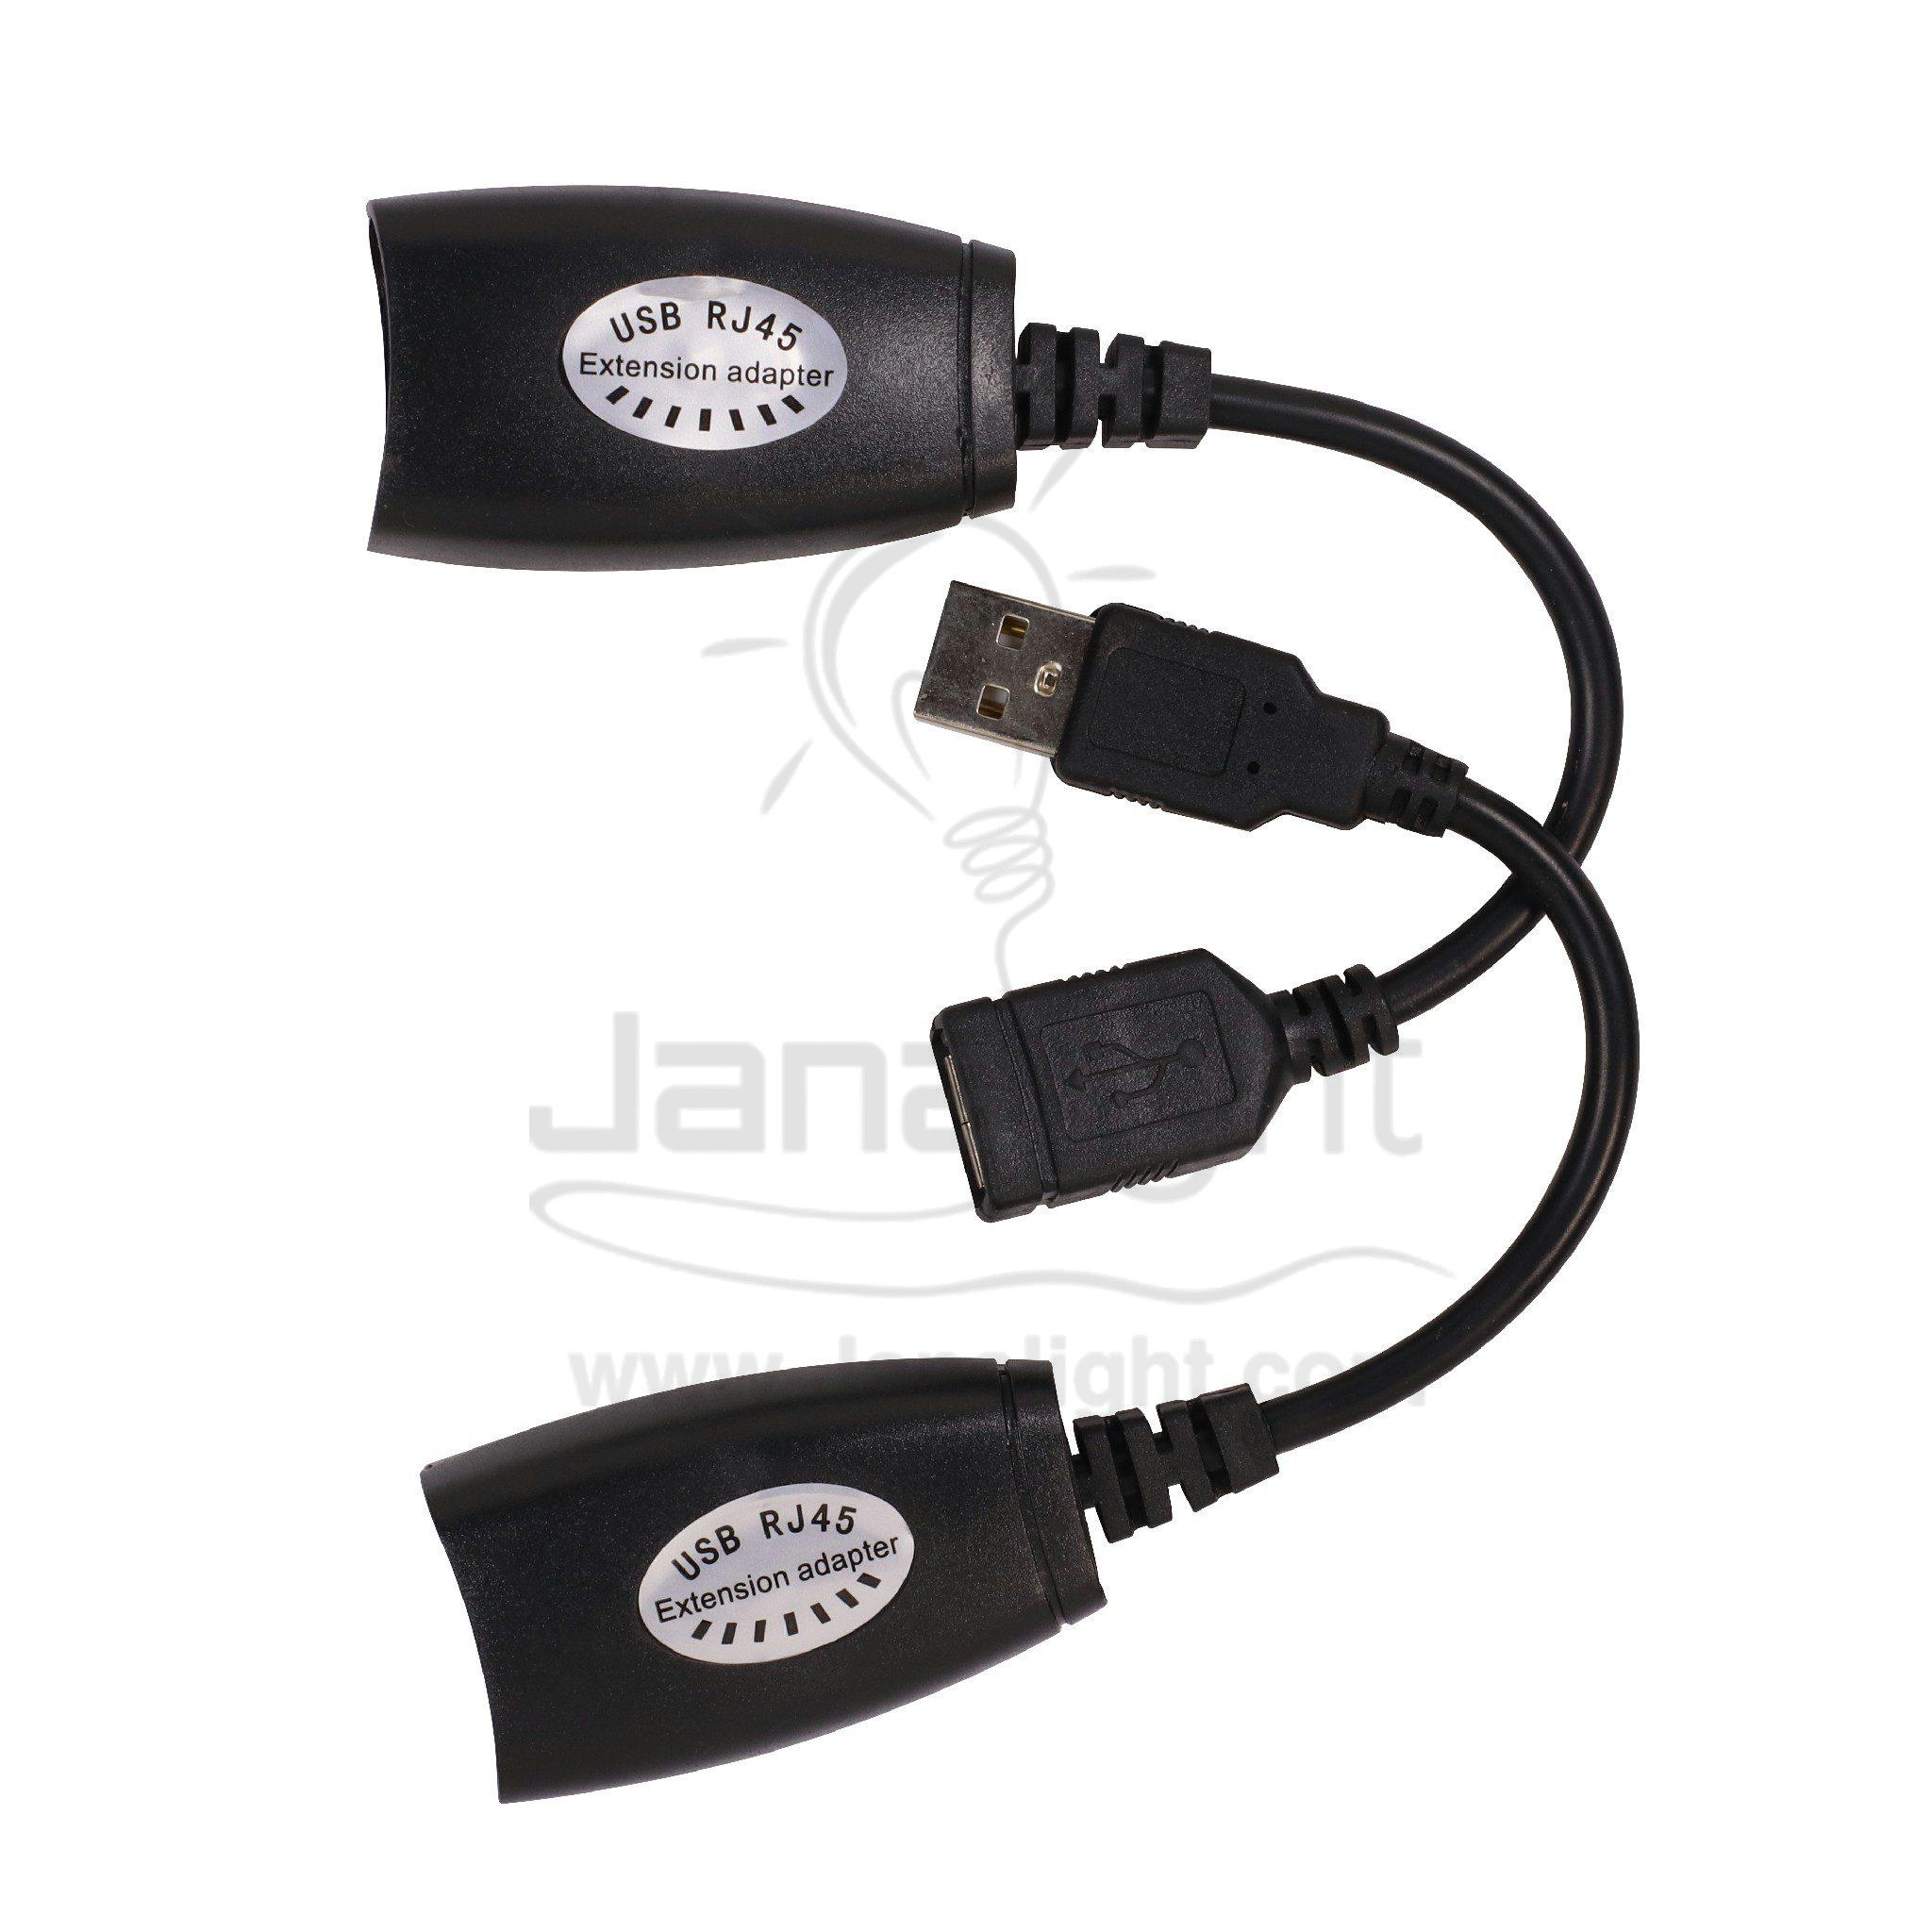 تحويلة من كبل شبكة الى USB ماوس عدد 2 Ethernet Adapter USB Network RJ45 Lan Wired Adapter for Nintendo Switch